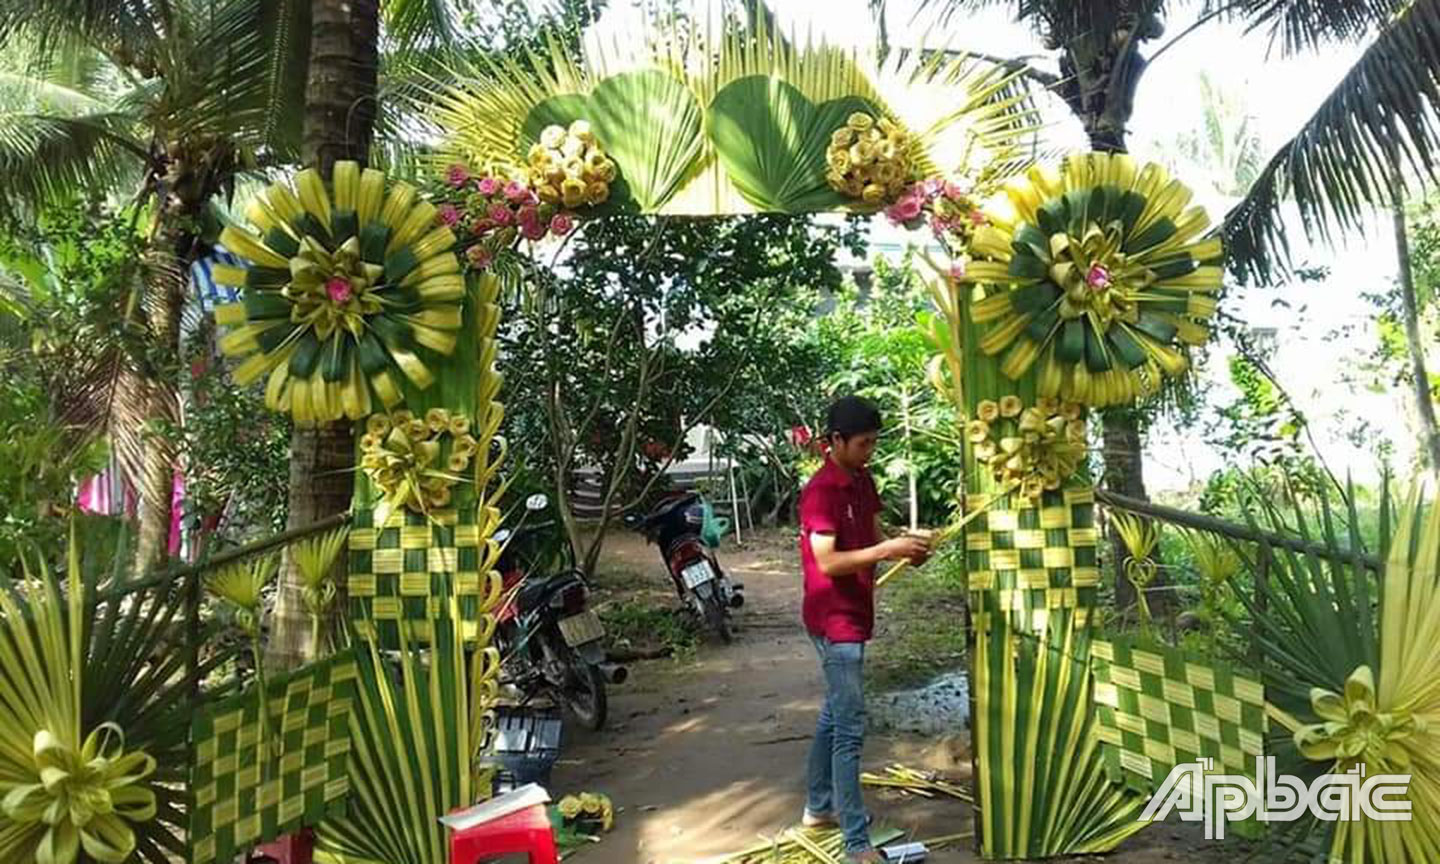 Cổng cưới lá dừa ở Tiền Giang đẹp như phim cổ tích đang gây sốt mạng xã hội từ Nam ra Bắc - Ảnh 3.